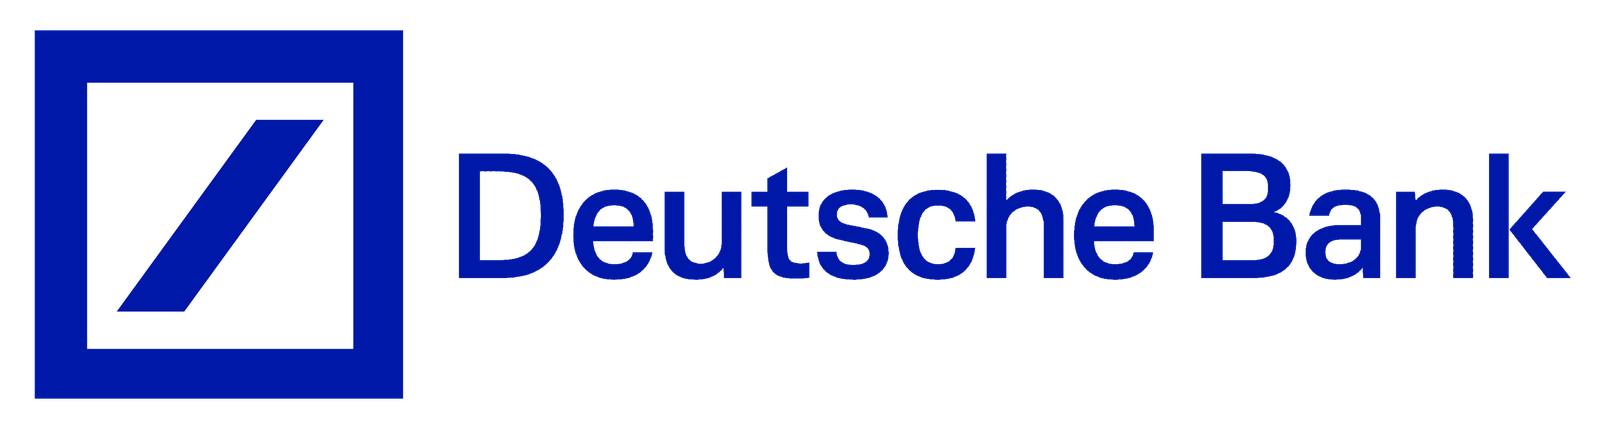 Deutsche_Bank_logo_PNG1